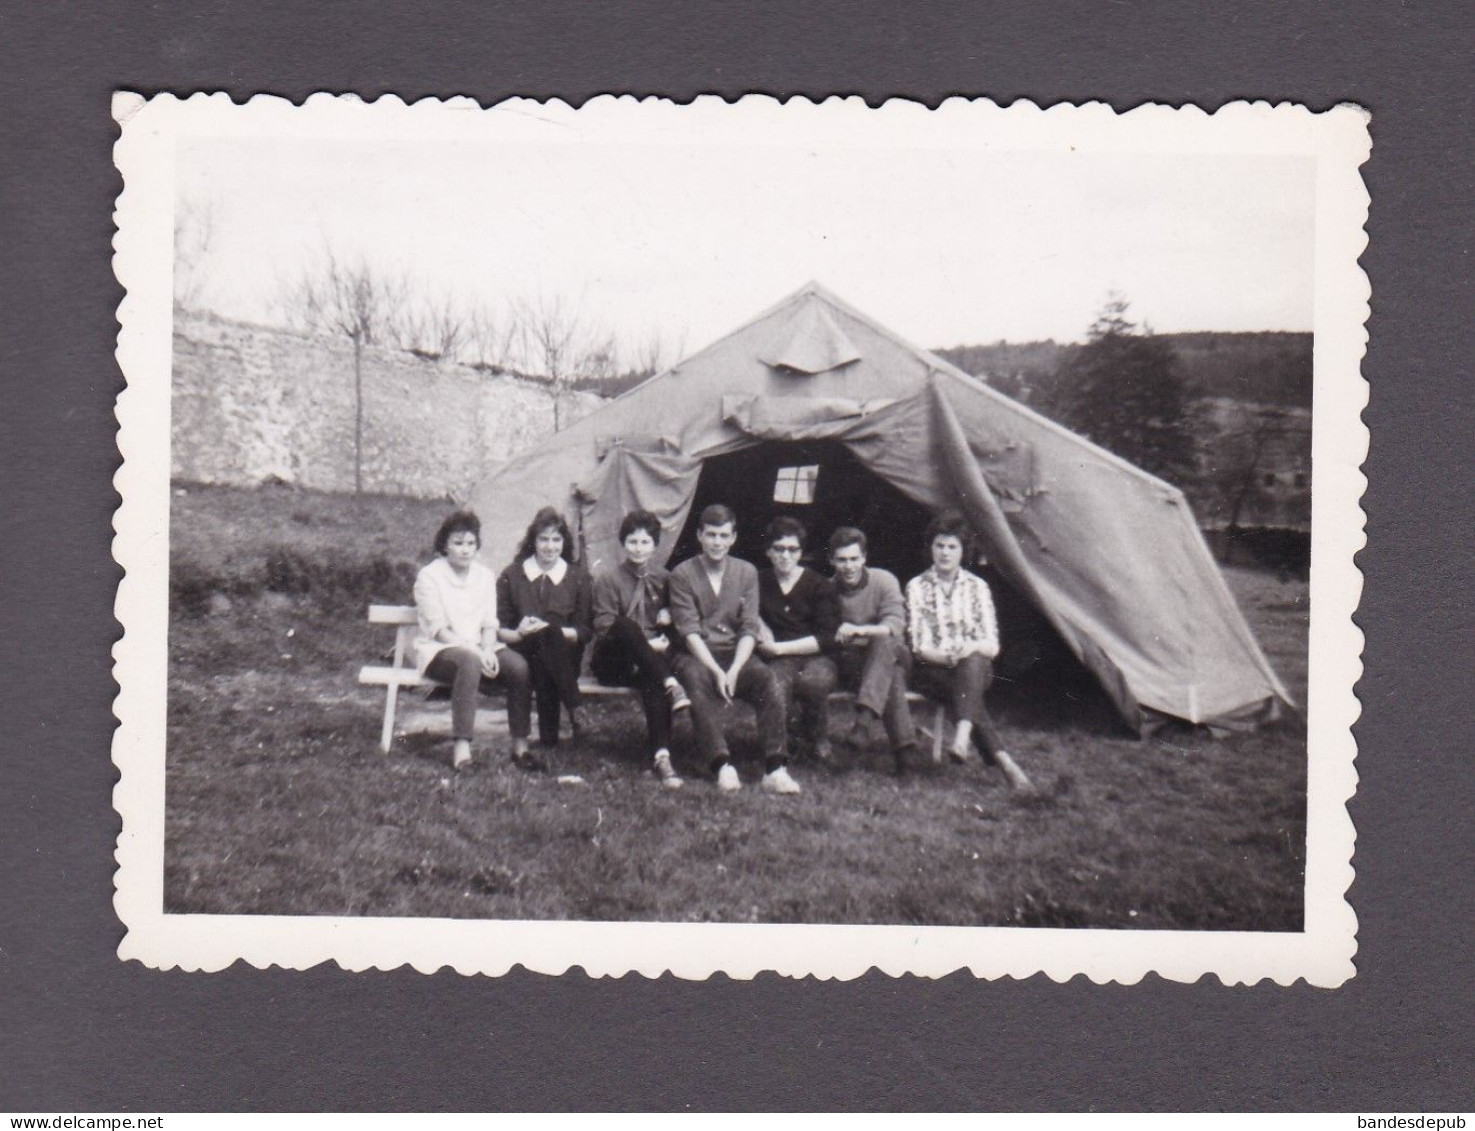 Photo Originale Vintage Snapshot Groupe Jeunes Gens Tente Stage De St Saint Mihiel Meuse Scoutisme ?   3890 - Orte